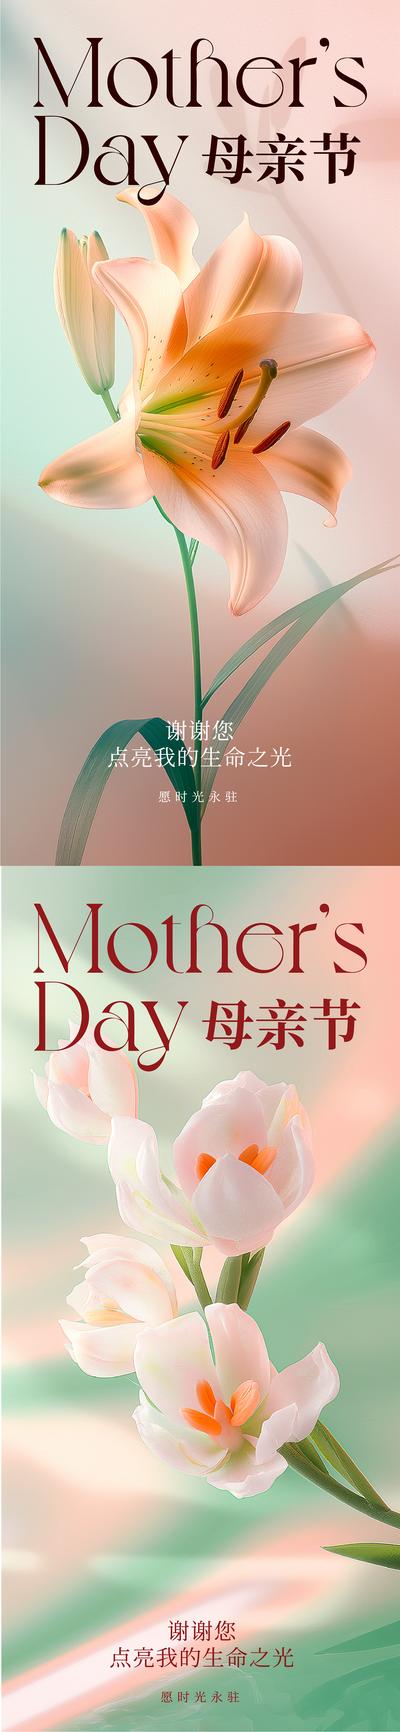 【南门网】广告 海报 公历节日 母亲节 花 温馨 光影 系列 唯美